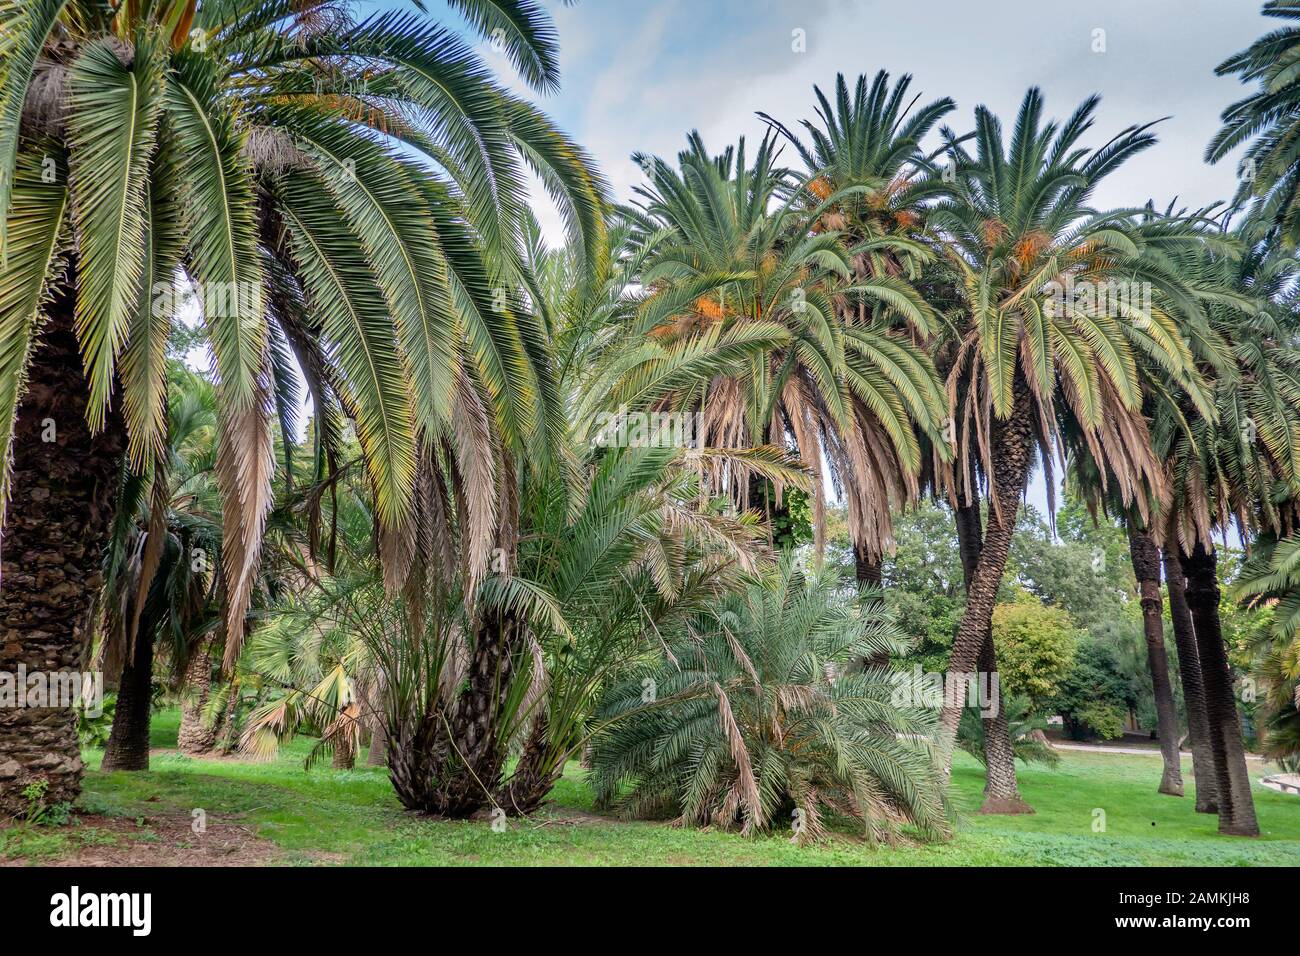 Palmiers dans le jardin botanique de Trastevere, Rome Italie Banque D'Images